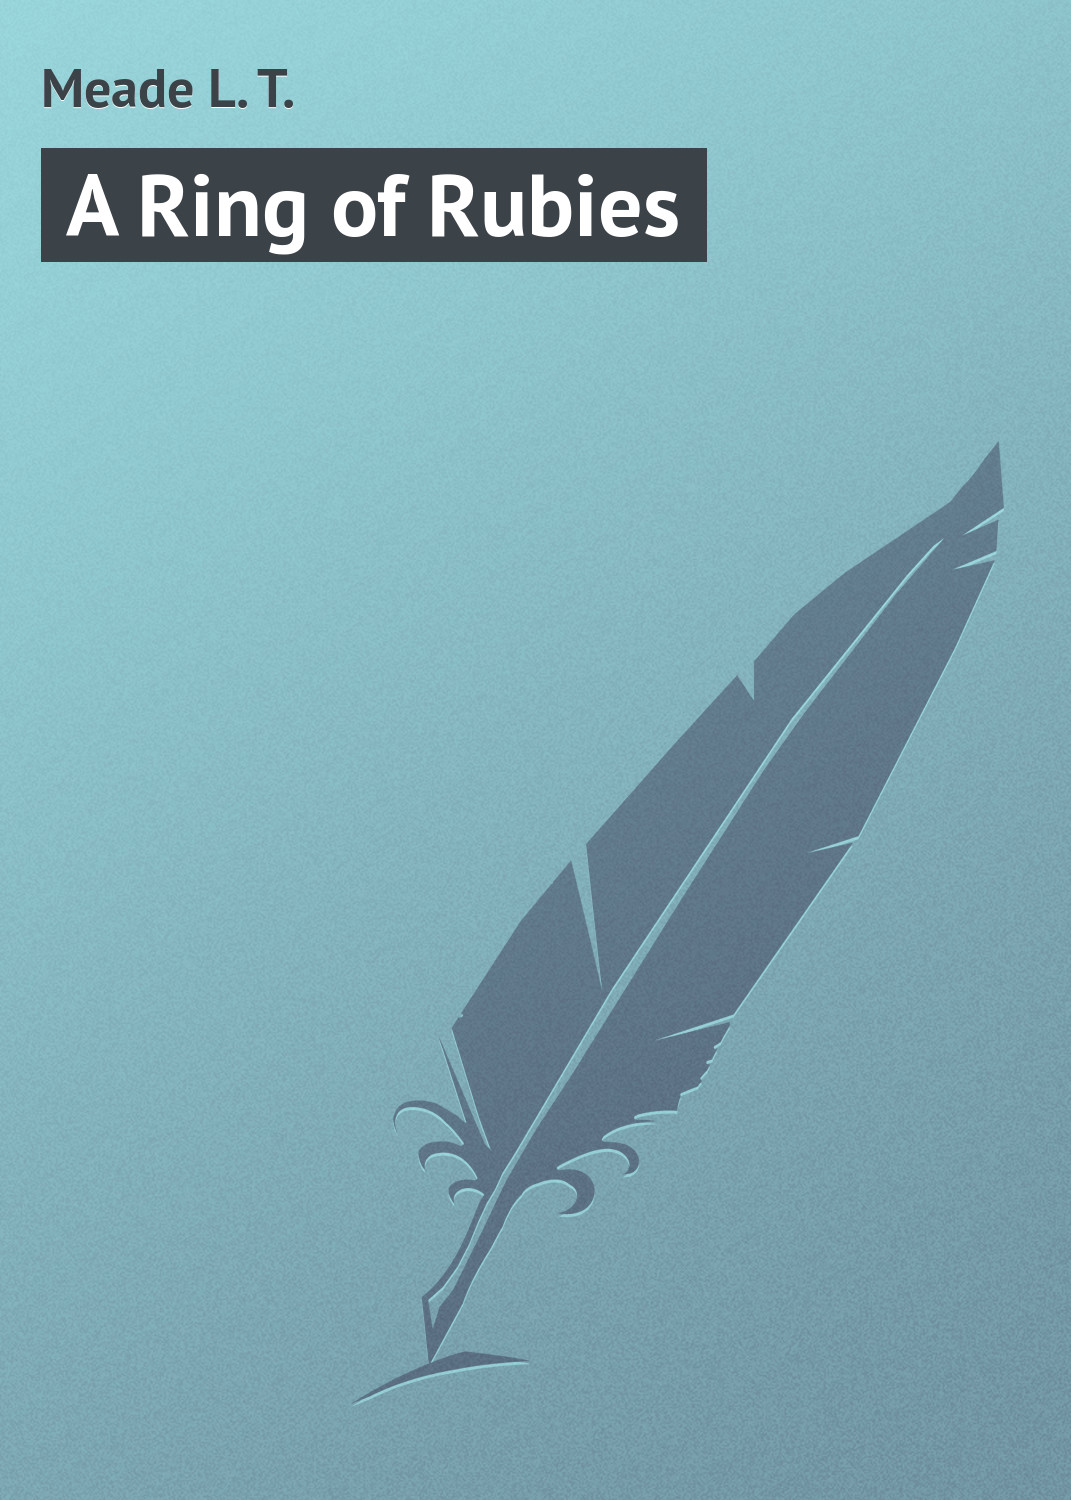 Книга A Ring of Rubies из серии , созданная L. Meade, может относится к жанру Зарубежная классика, Зарубежные детские книги. Стоимость электронной книги A Ring of Rubies с идентификатором 23164379 составляет 5.99 руб.